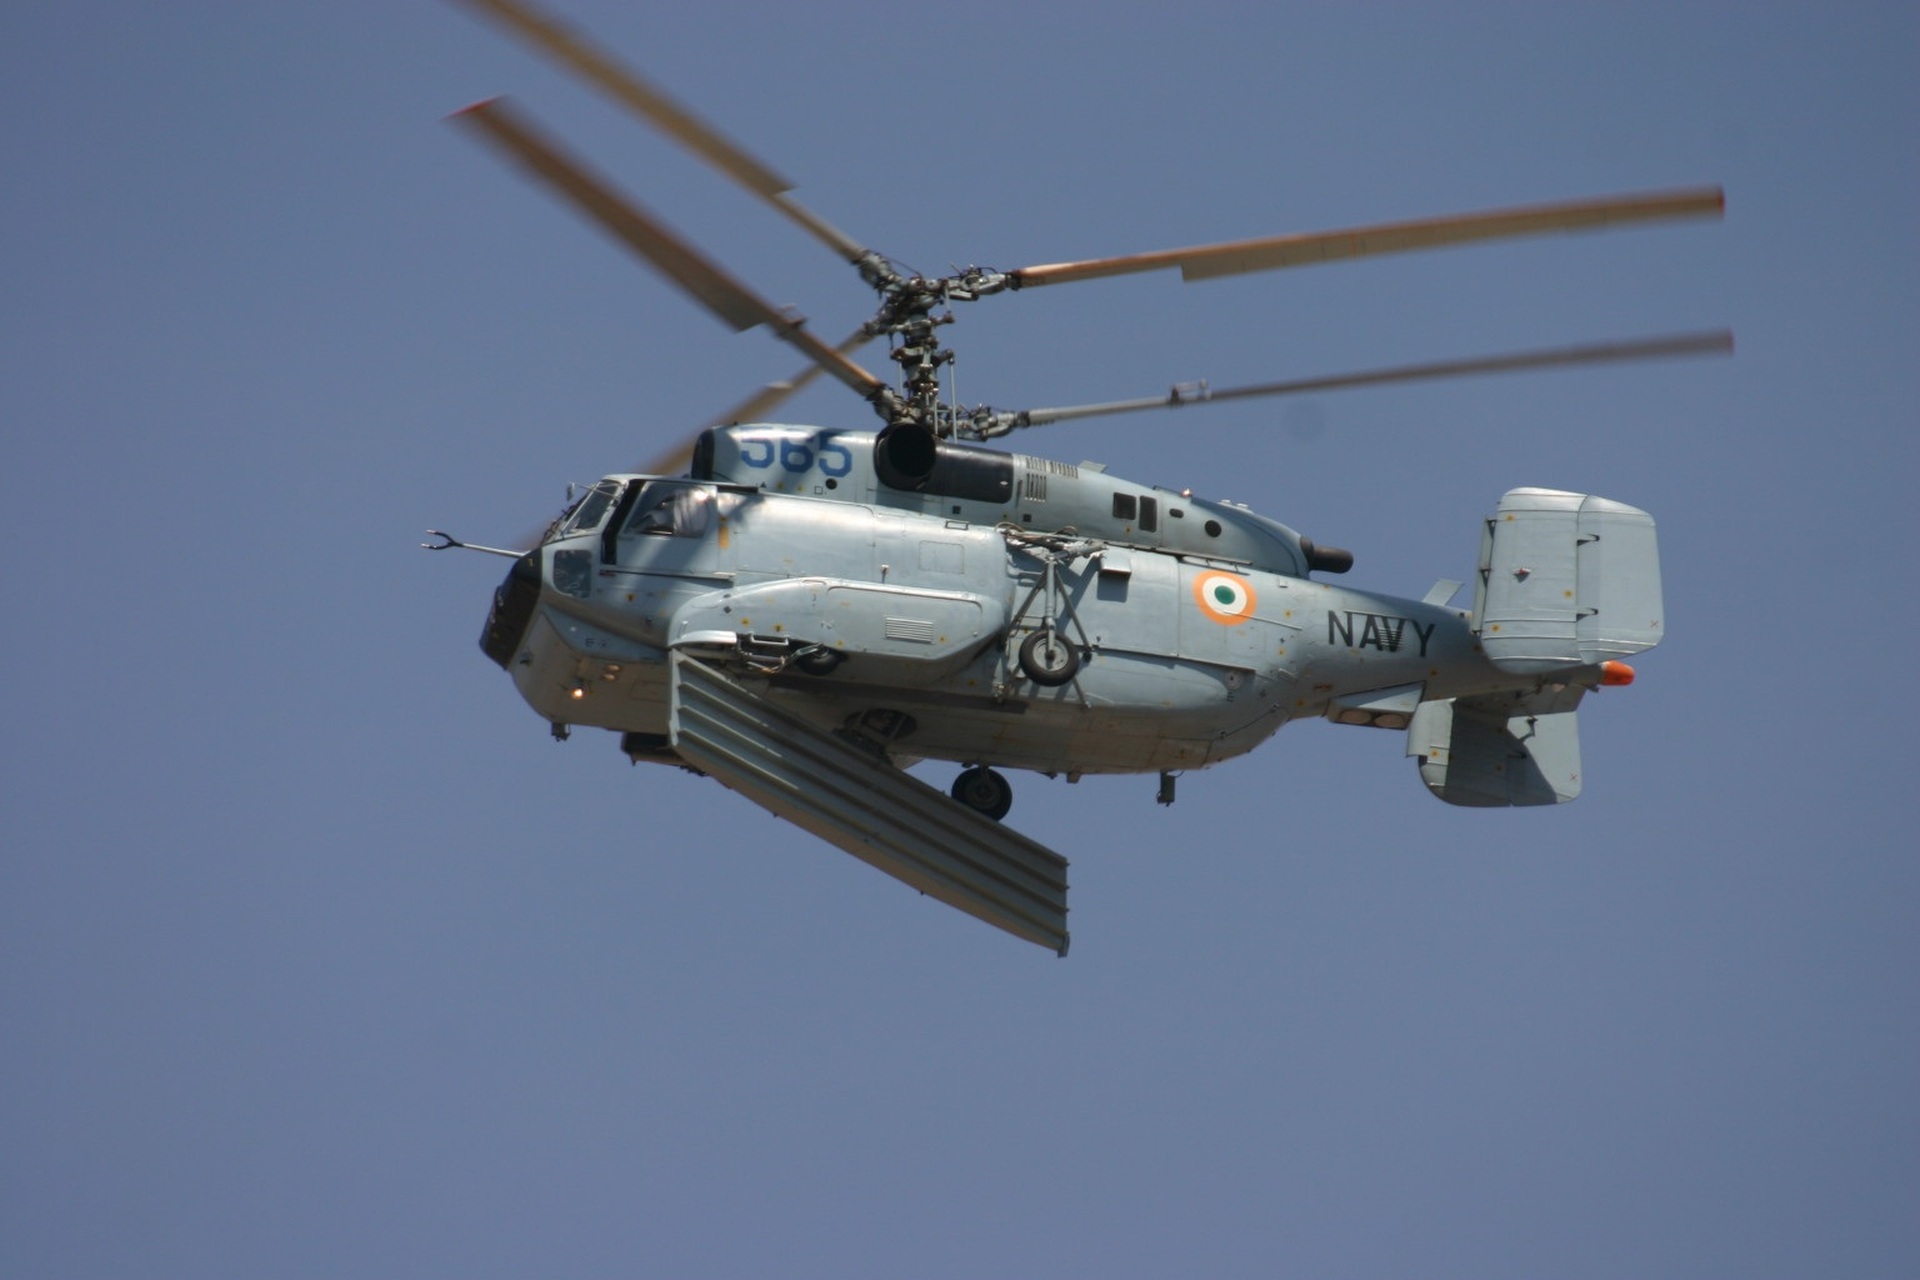 រូបថត Ka-31 នៃកងទ័ពឥណ្ឌា